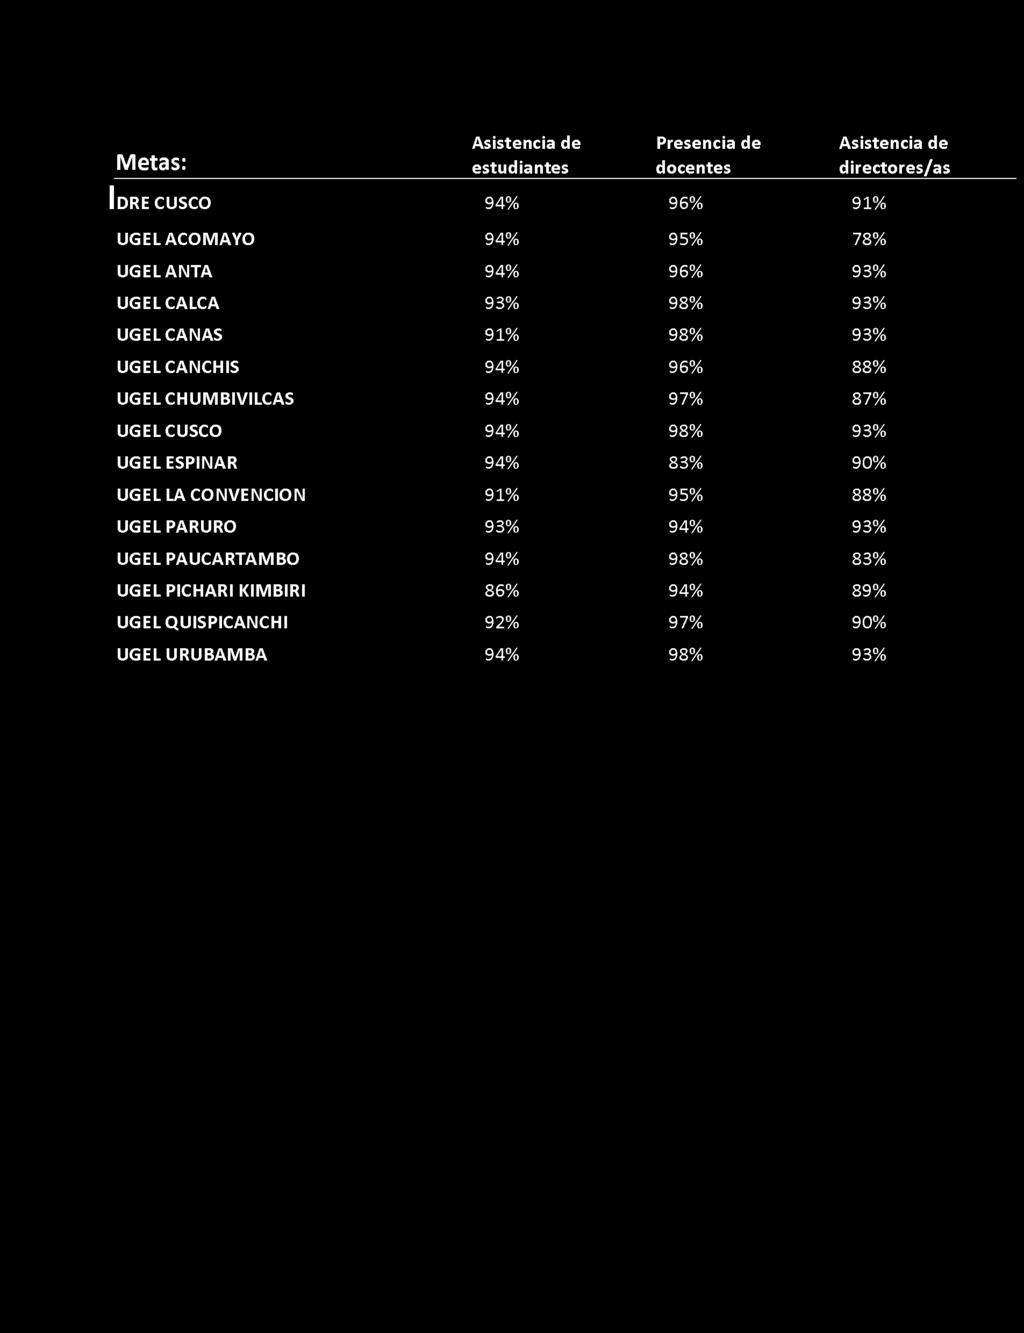 9 4 % 9 7 % 8 7 % UGELCUSCO 9 4 % 9 8 % 9 3 % UGEL ESPINAR 9 4 % 8 3 % 9 0 % UGEL LA CONVENCION 9 1 % 9 5 % 8 8 % UGELPARURO 9 3 % 9 4 % 9 3